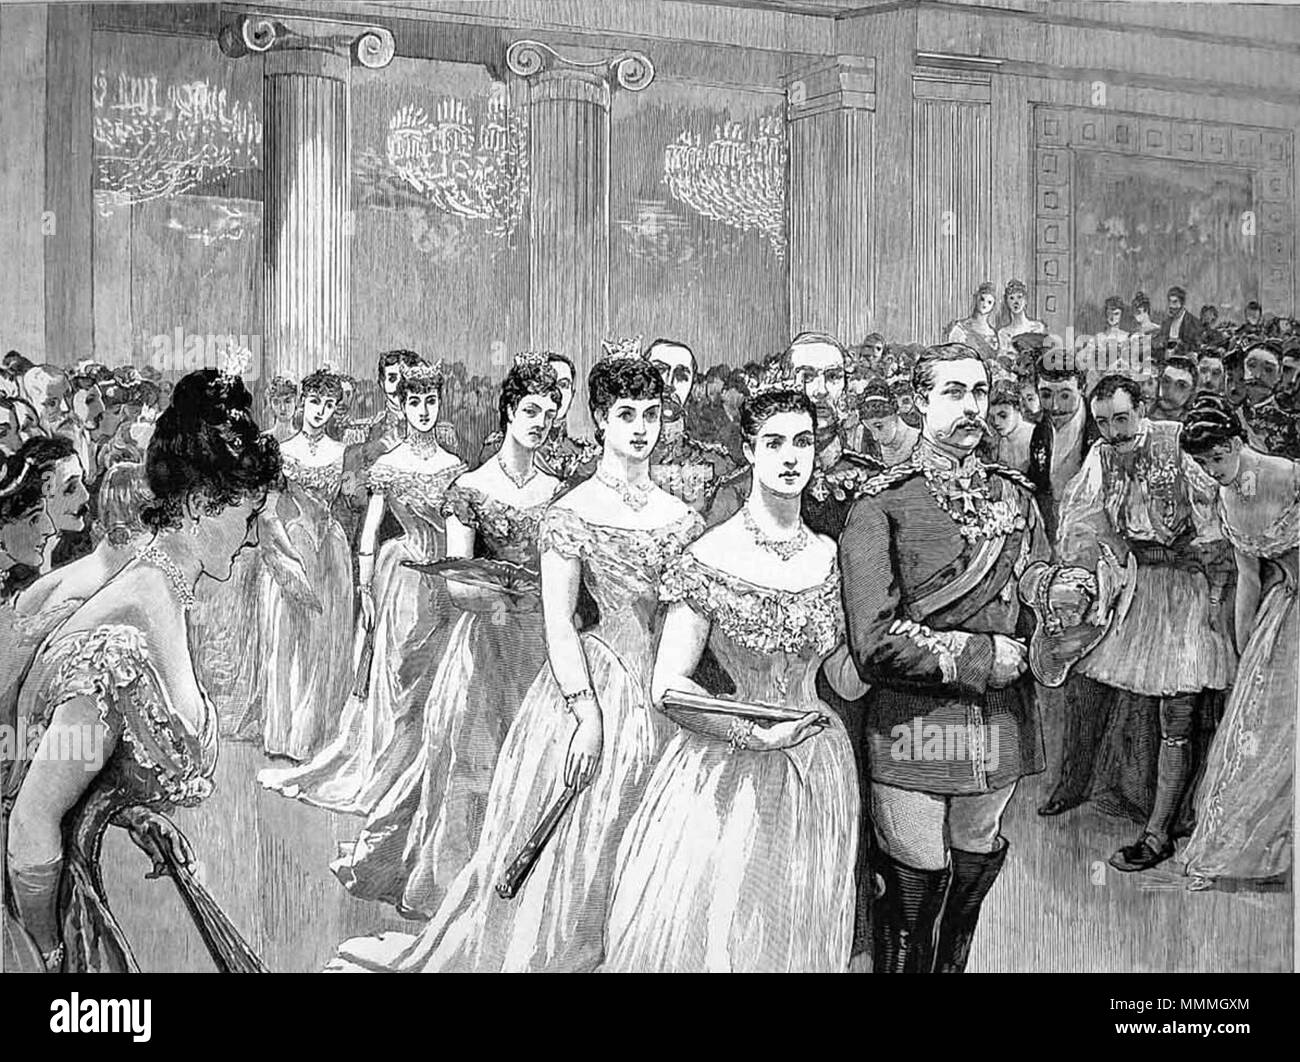 . Englisch: Der offizielle Ball hielt den Königlichen Palast in Athen am 27. Oktober 1889 die Hochzeit von Konstantin zu feiern, Kronprinz von Griechenland, mit Prinzessin Sophie von Preußen. 31 Juli 2013, 13:51:53. Unbekannt Ball im königlichen Palast von Athen 1889 Stockfoto